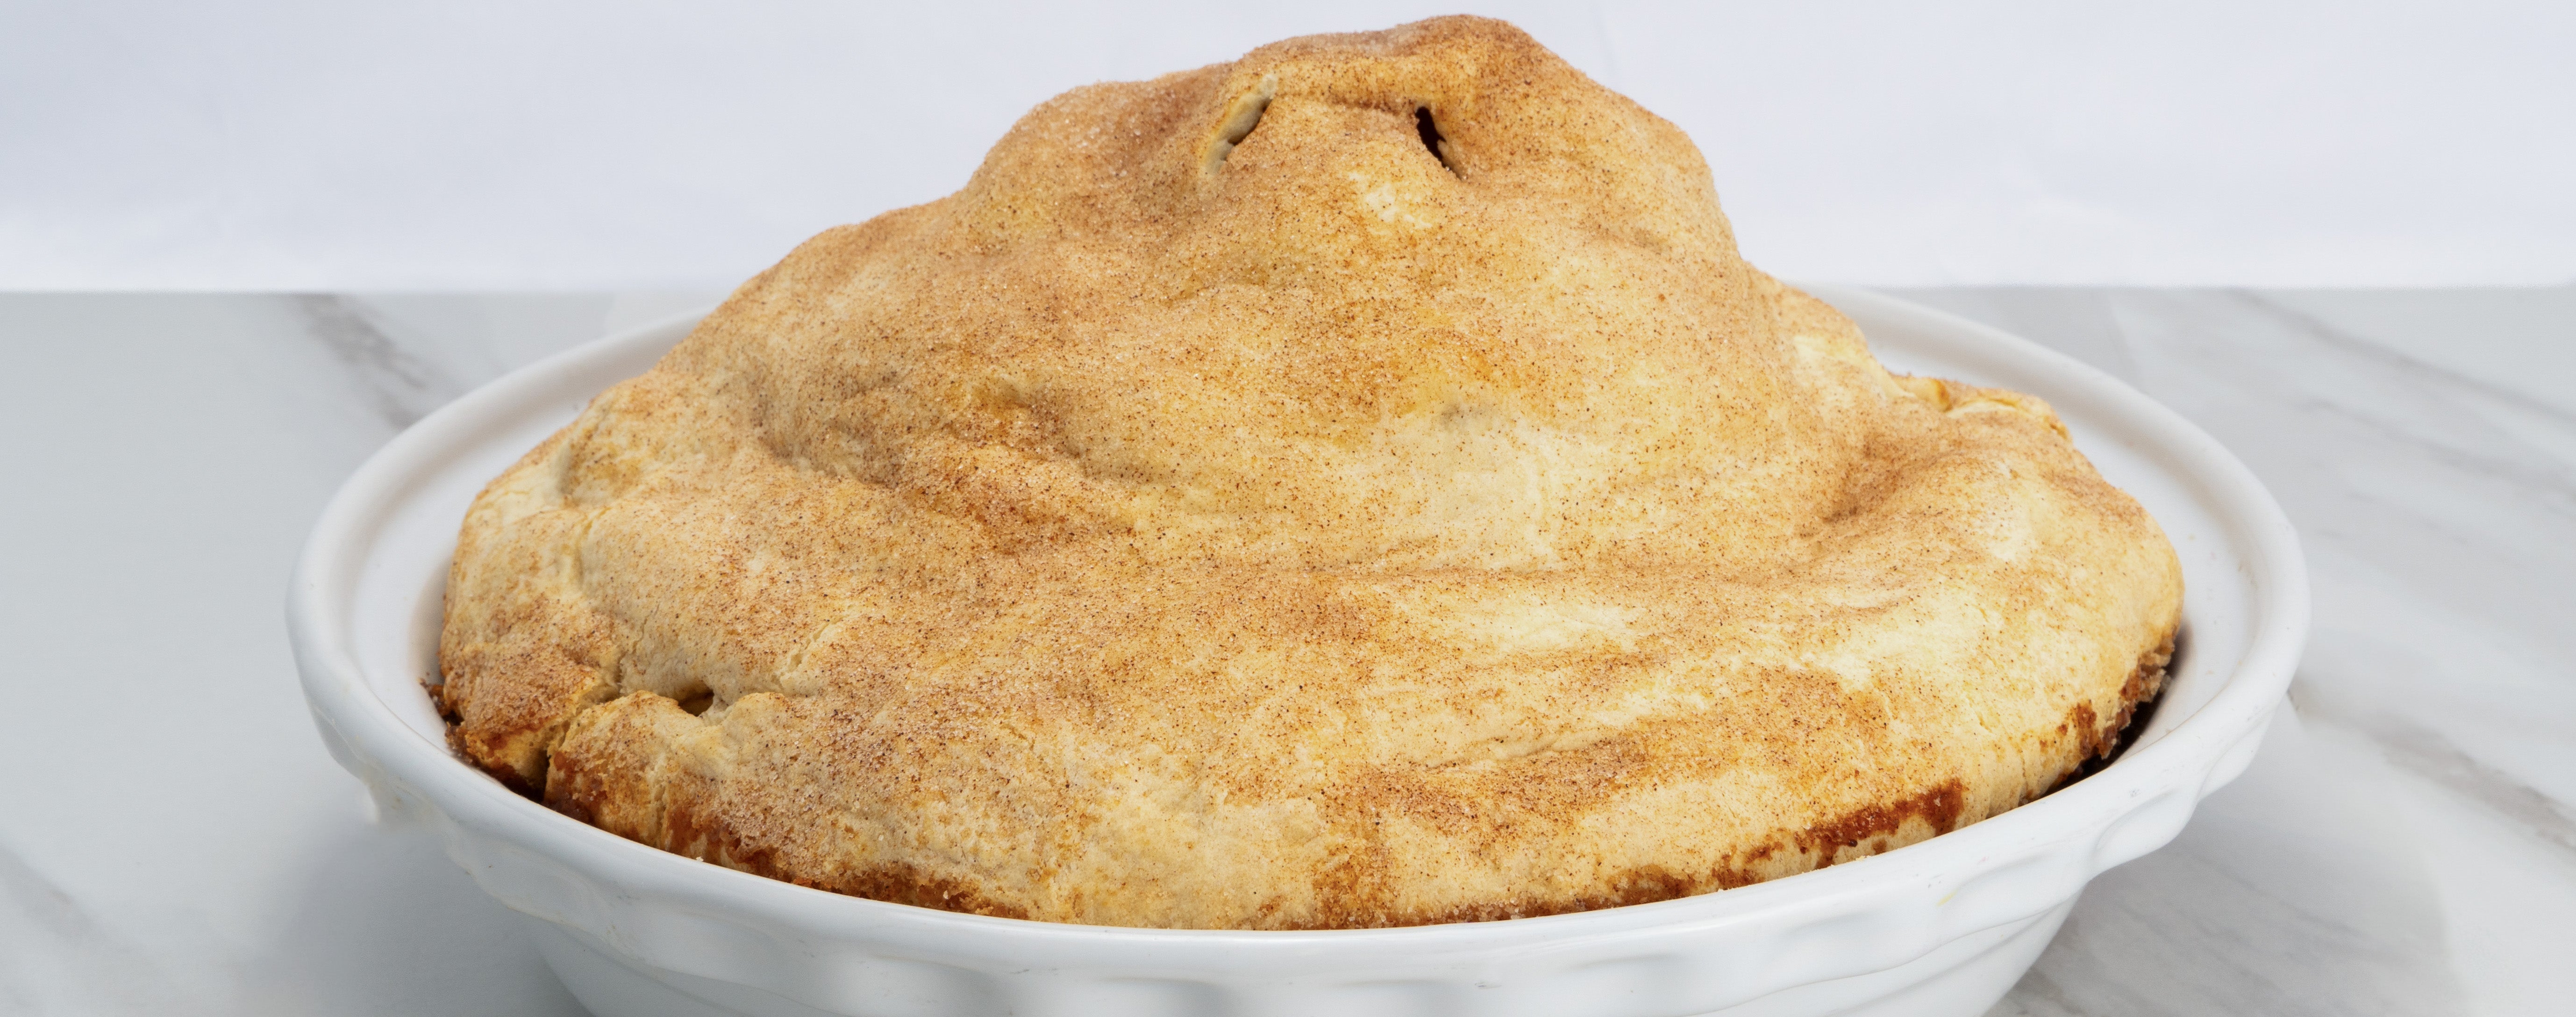 6 lb. Huge Apple Pie.